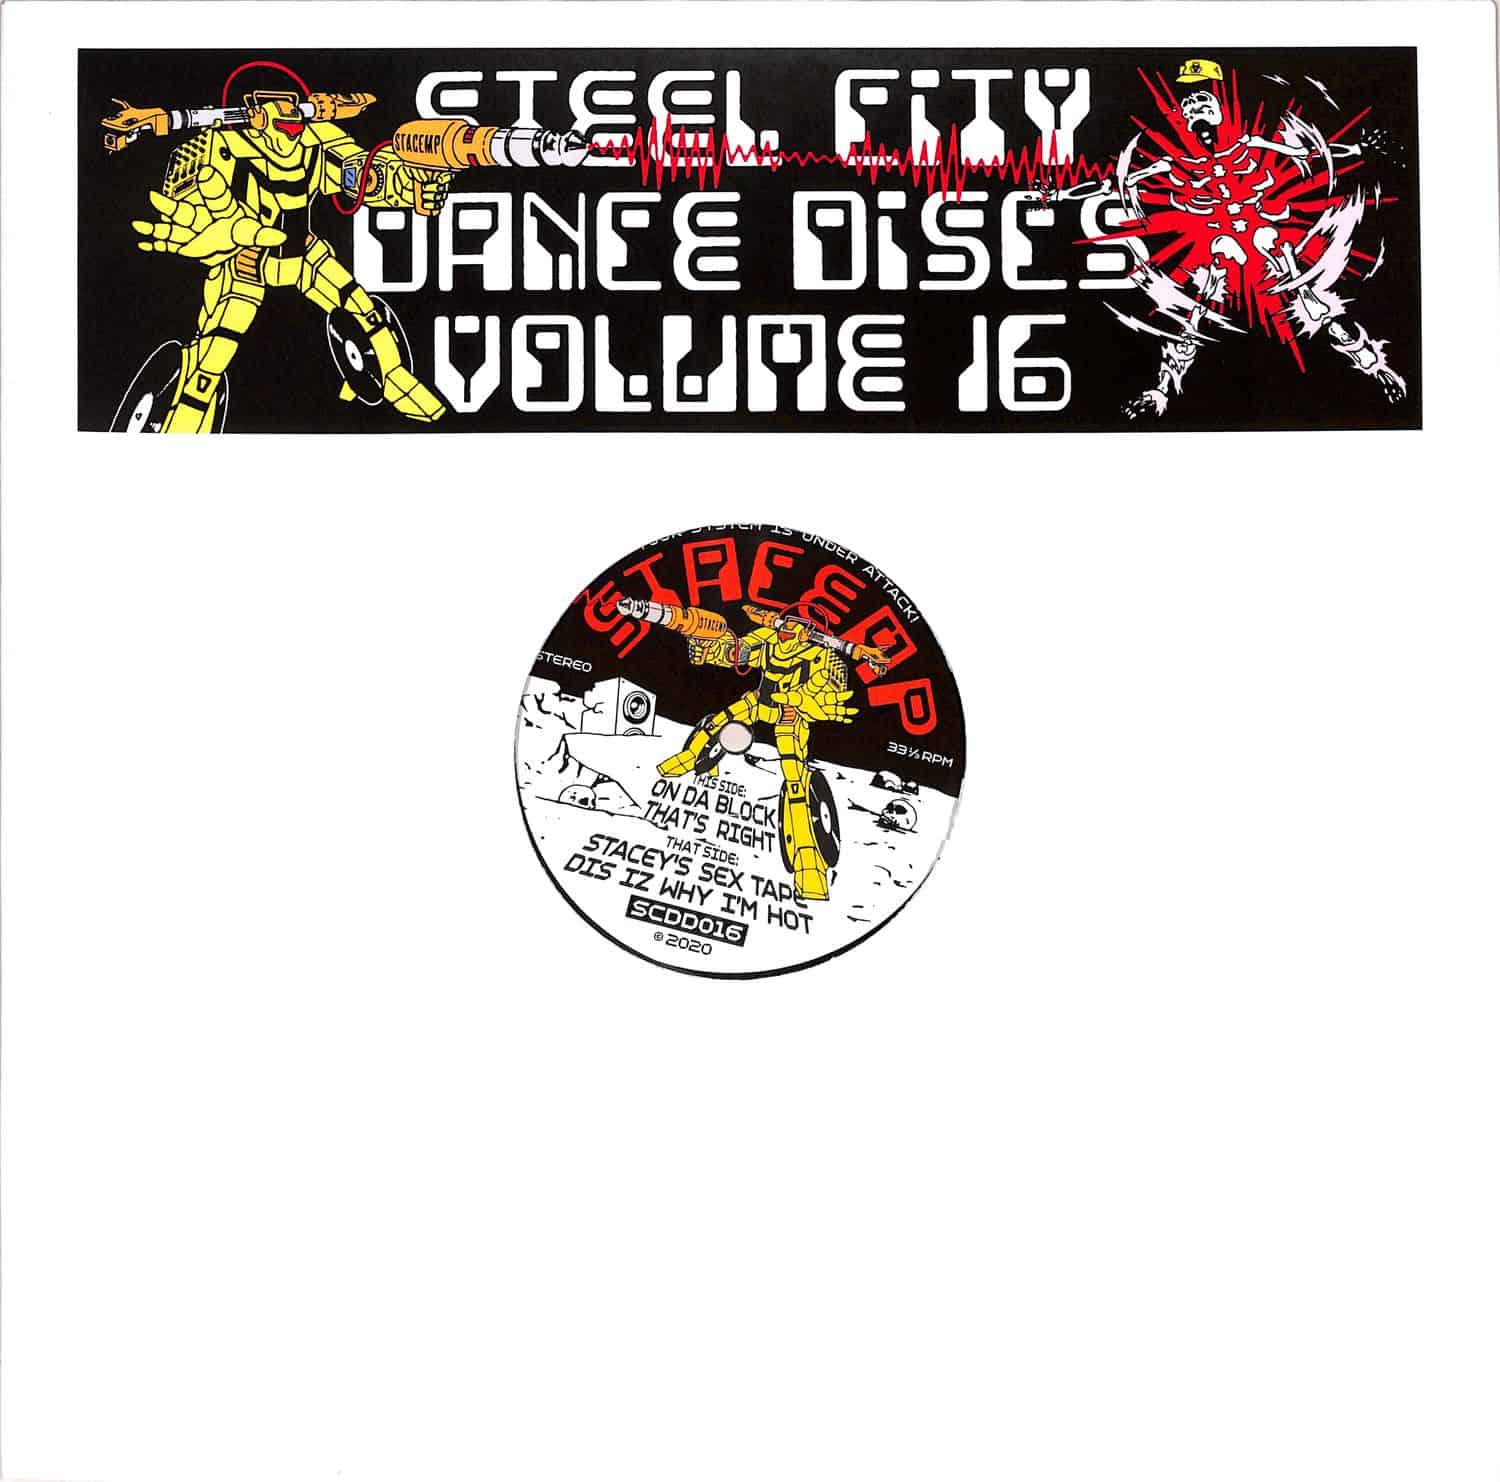 Stacemp - STEEL CITY DANCE DISCS VOLUME 16